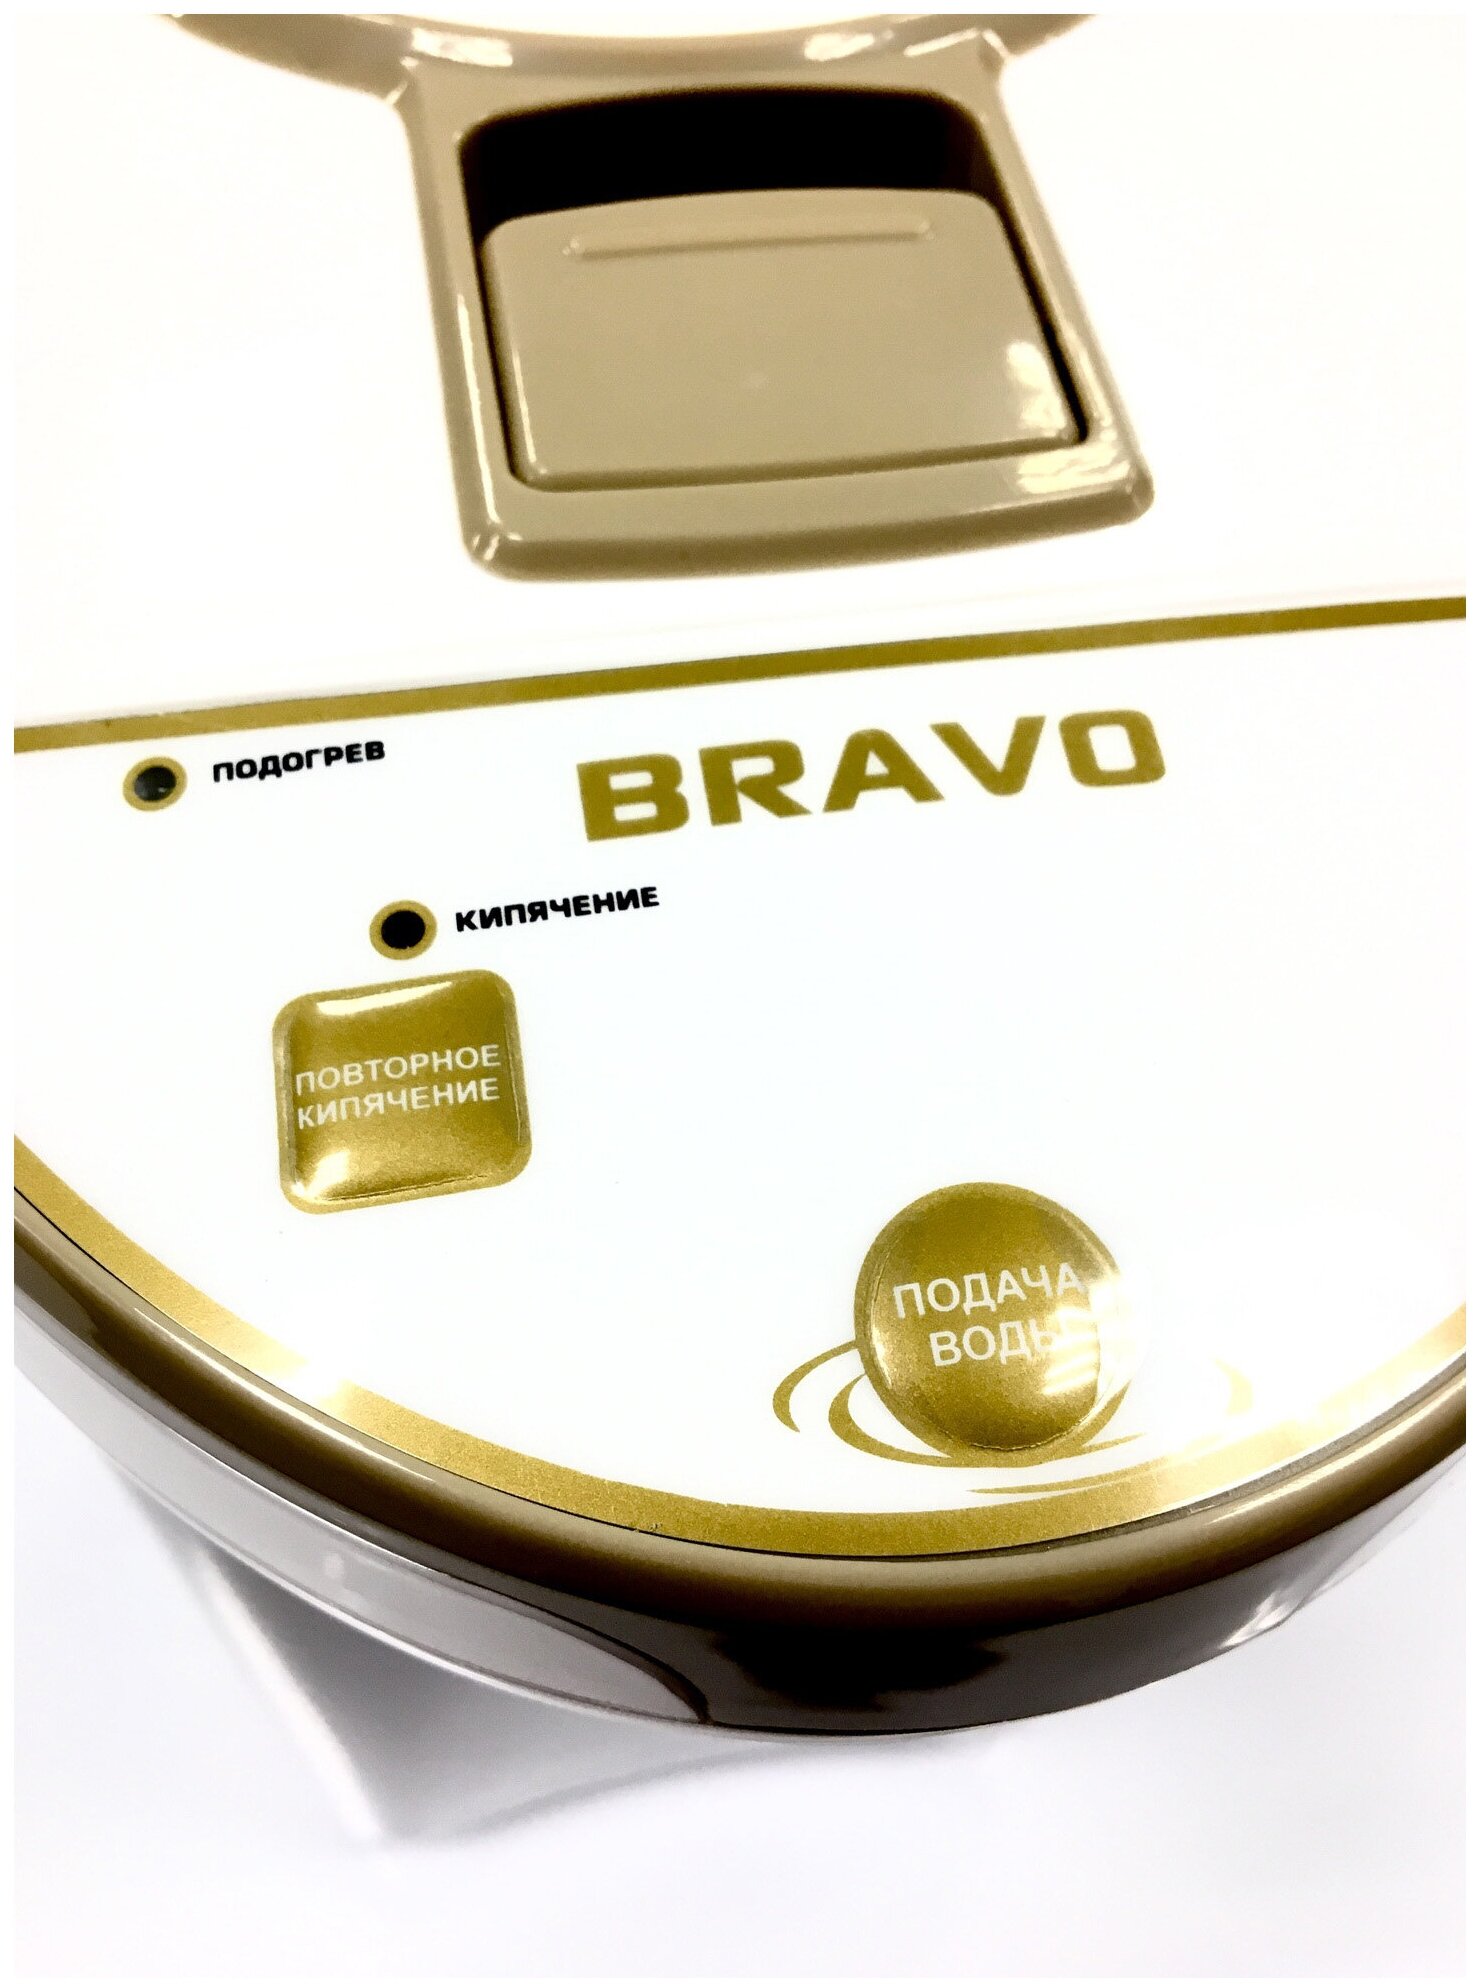 Термопот Bravo - фото №2